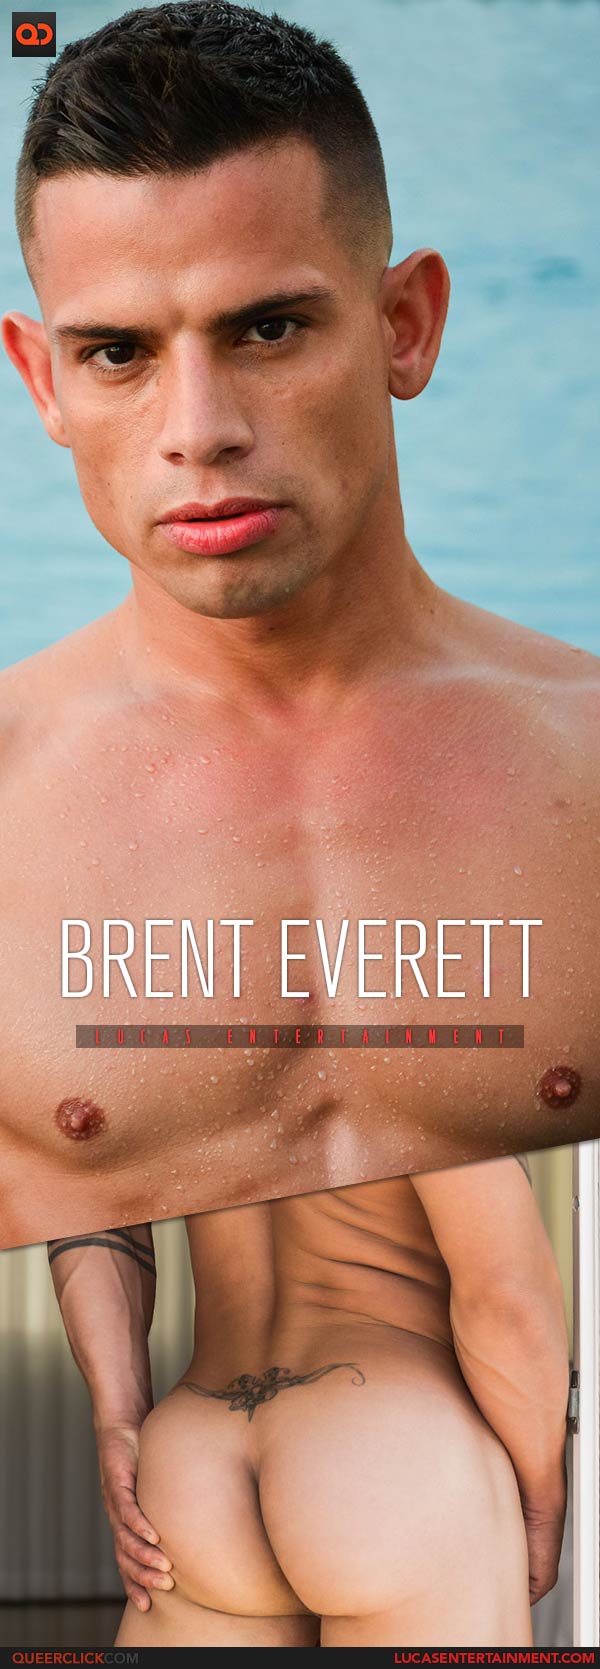 Lucas Entertainment: Brent Everett